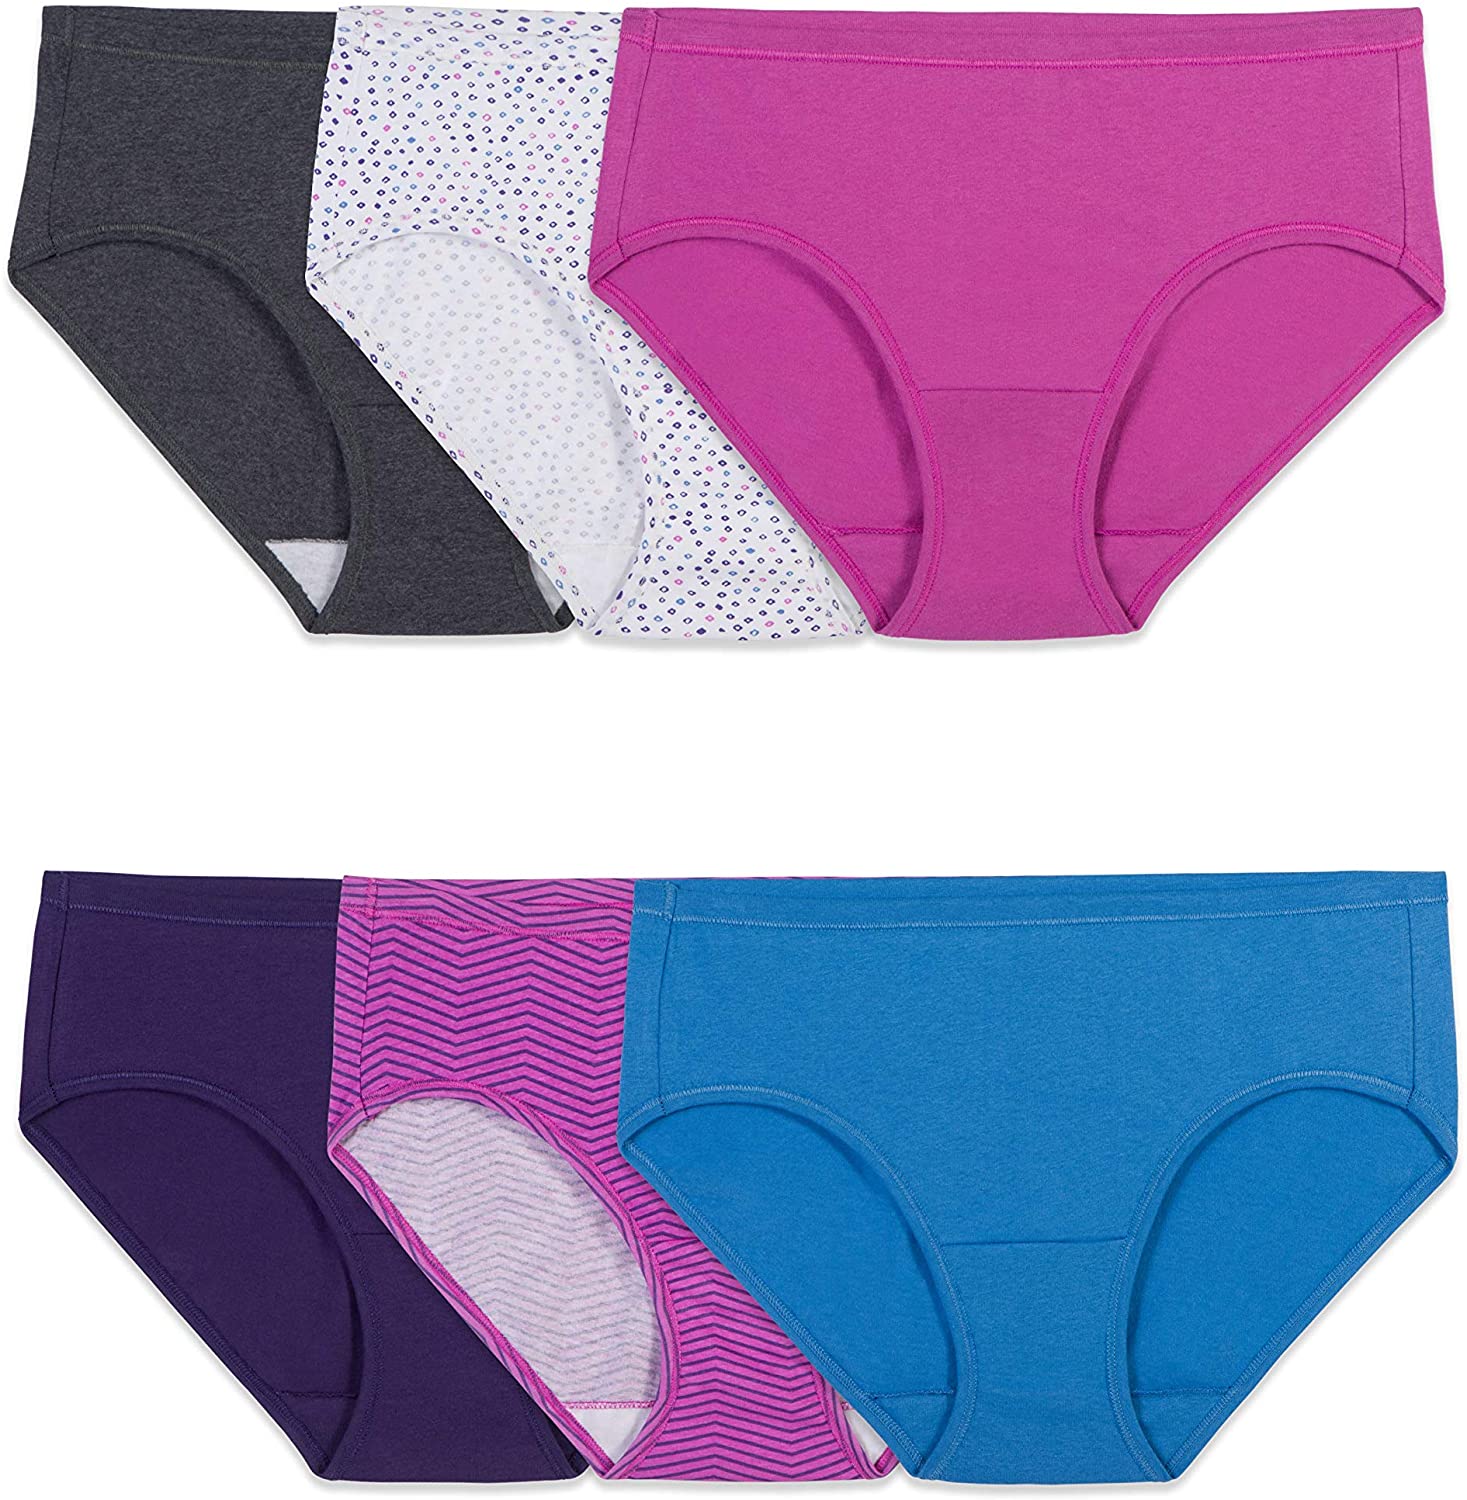 6 Pack of Fruit of the Loom Women's Underwear Cotton Bikini Panty